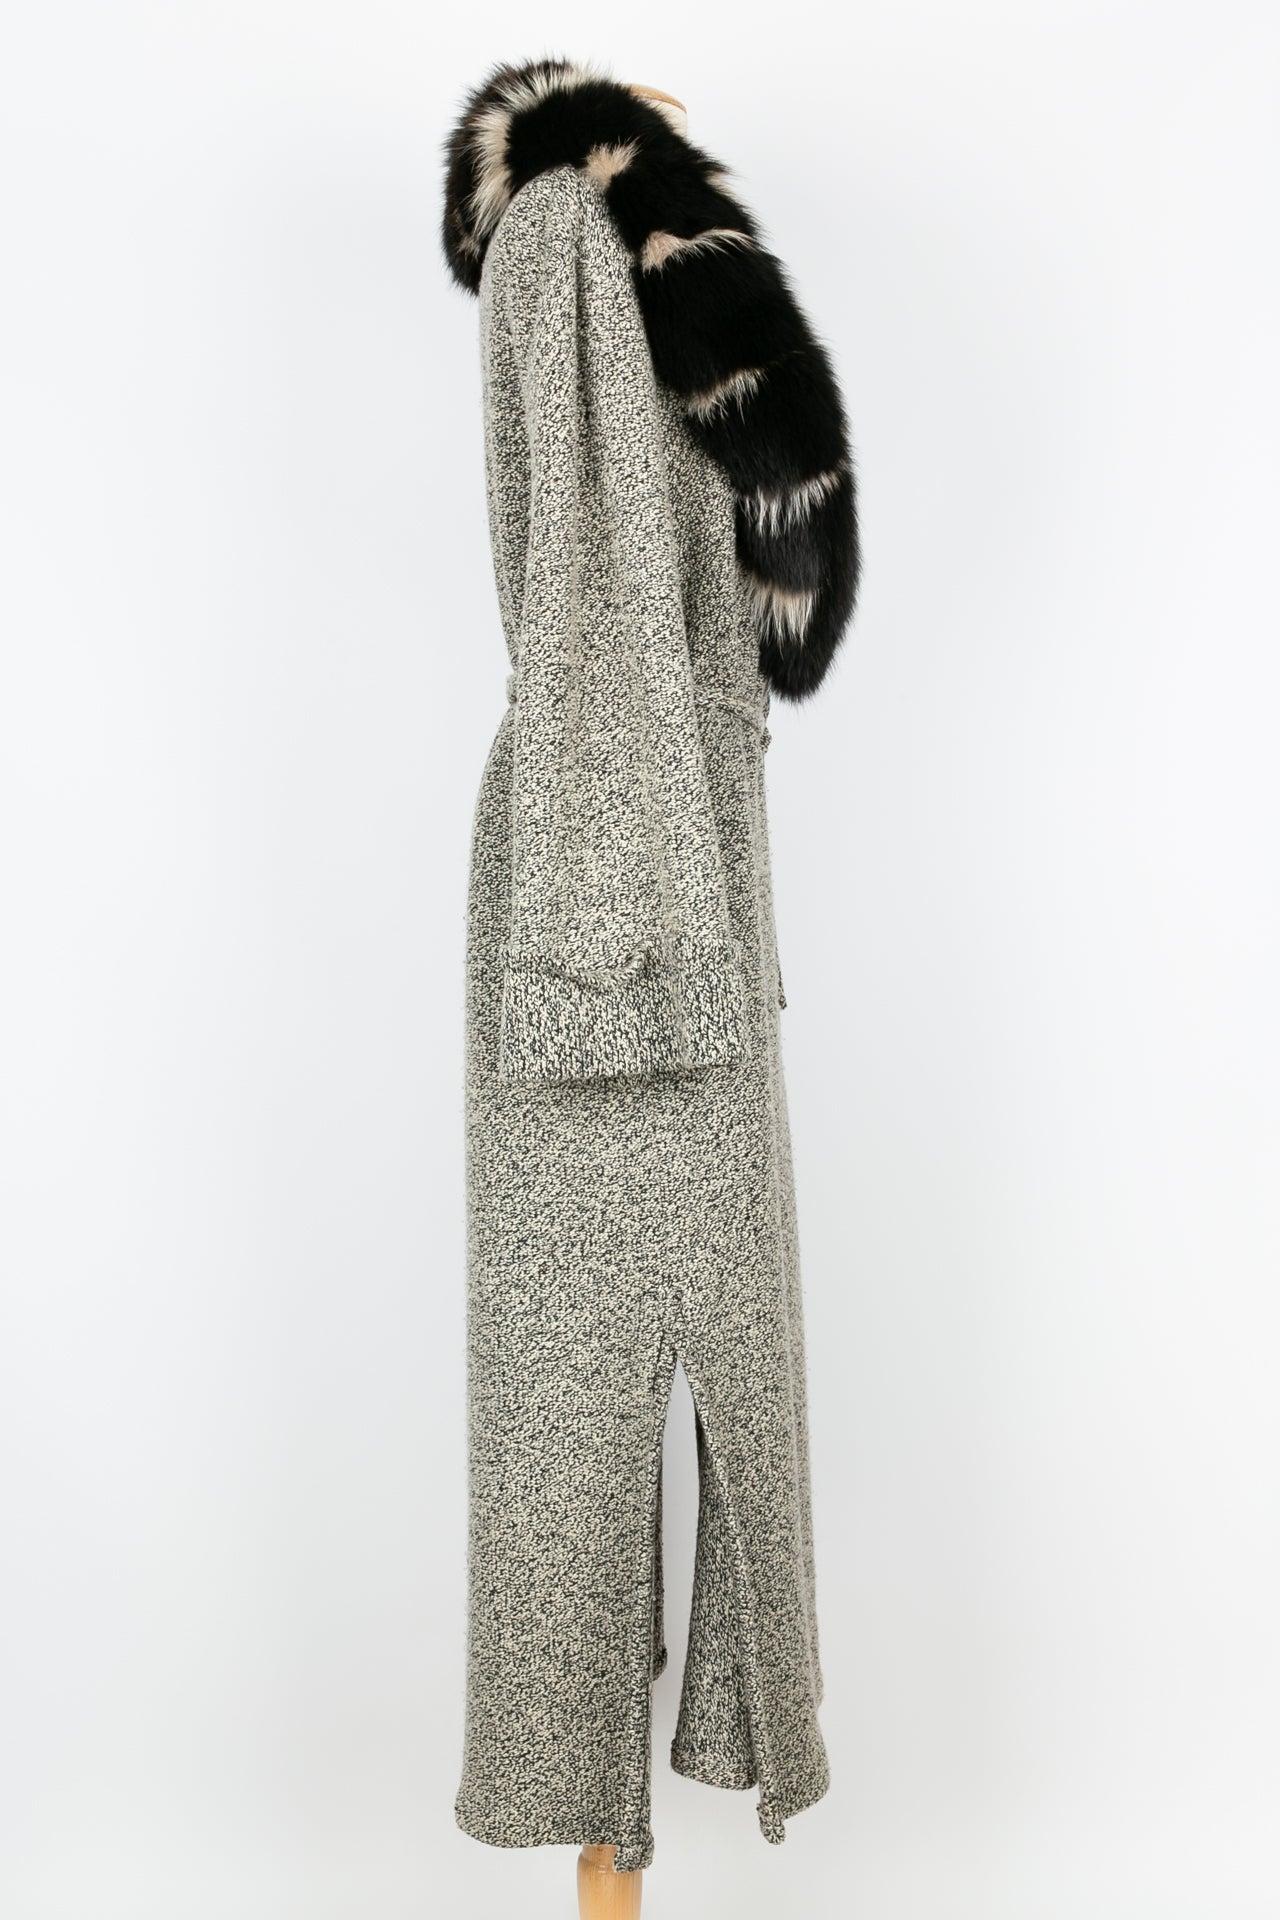 Women's Jean-Louis Scherrer Long Coat in Black and Beige Wool, Size 40FR For Sale